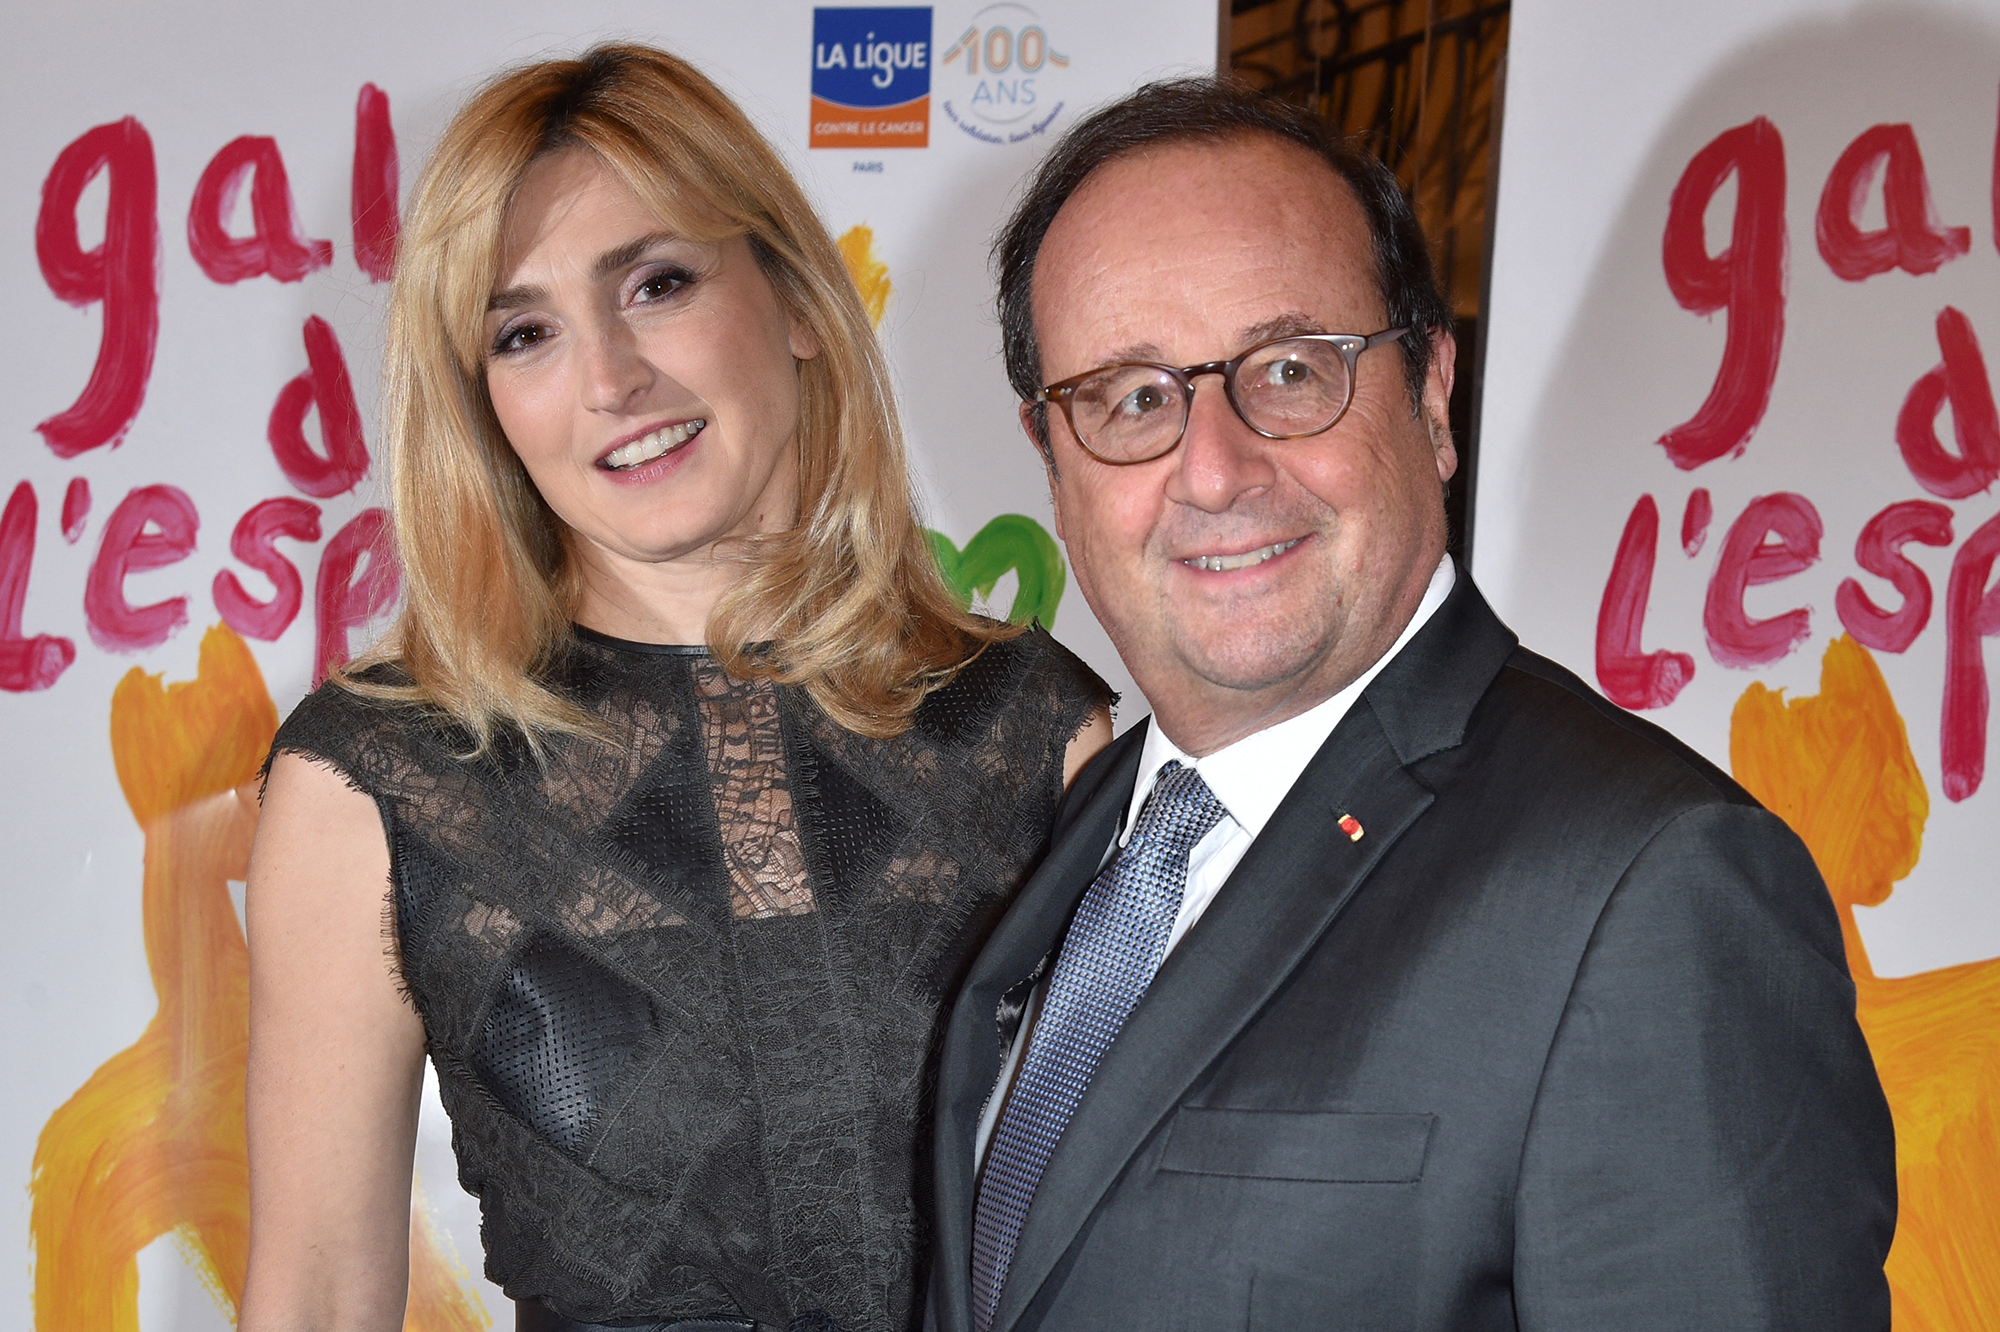 Julie Gayet et François Hollande mariés : les touchantes confidences de la comédienne